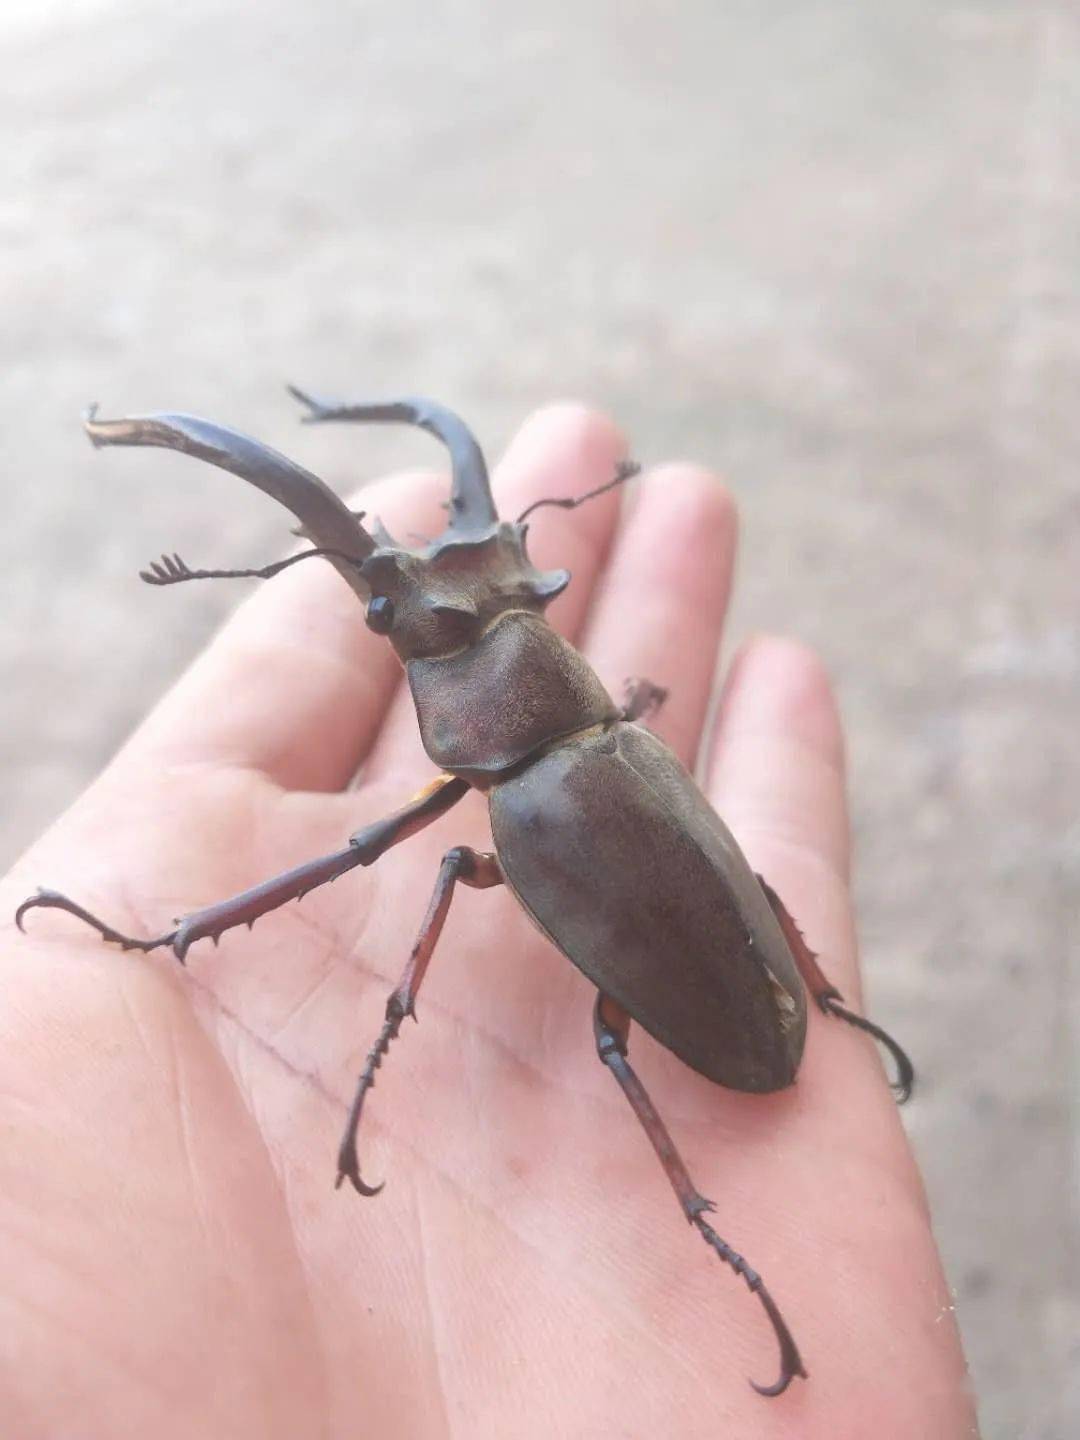 罗平一村民树林中发现大甲虫体长约8cm头上长犄角你见过没